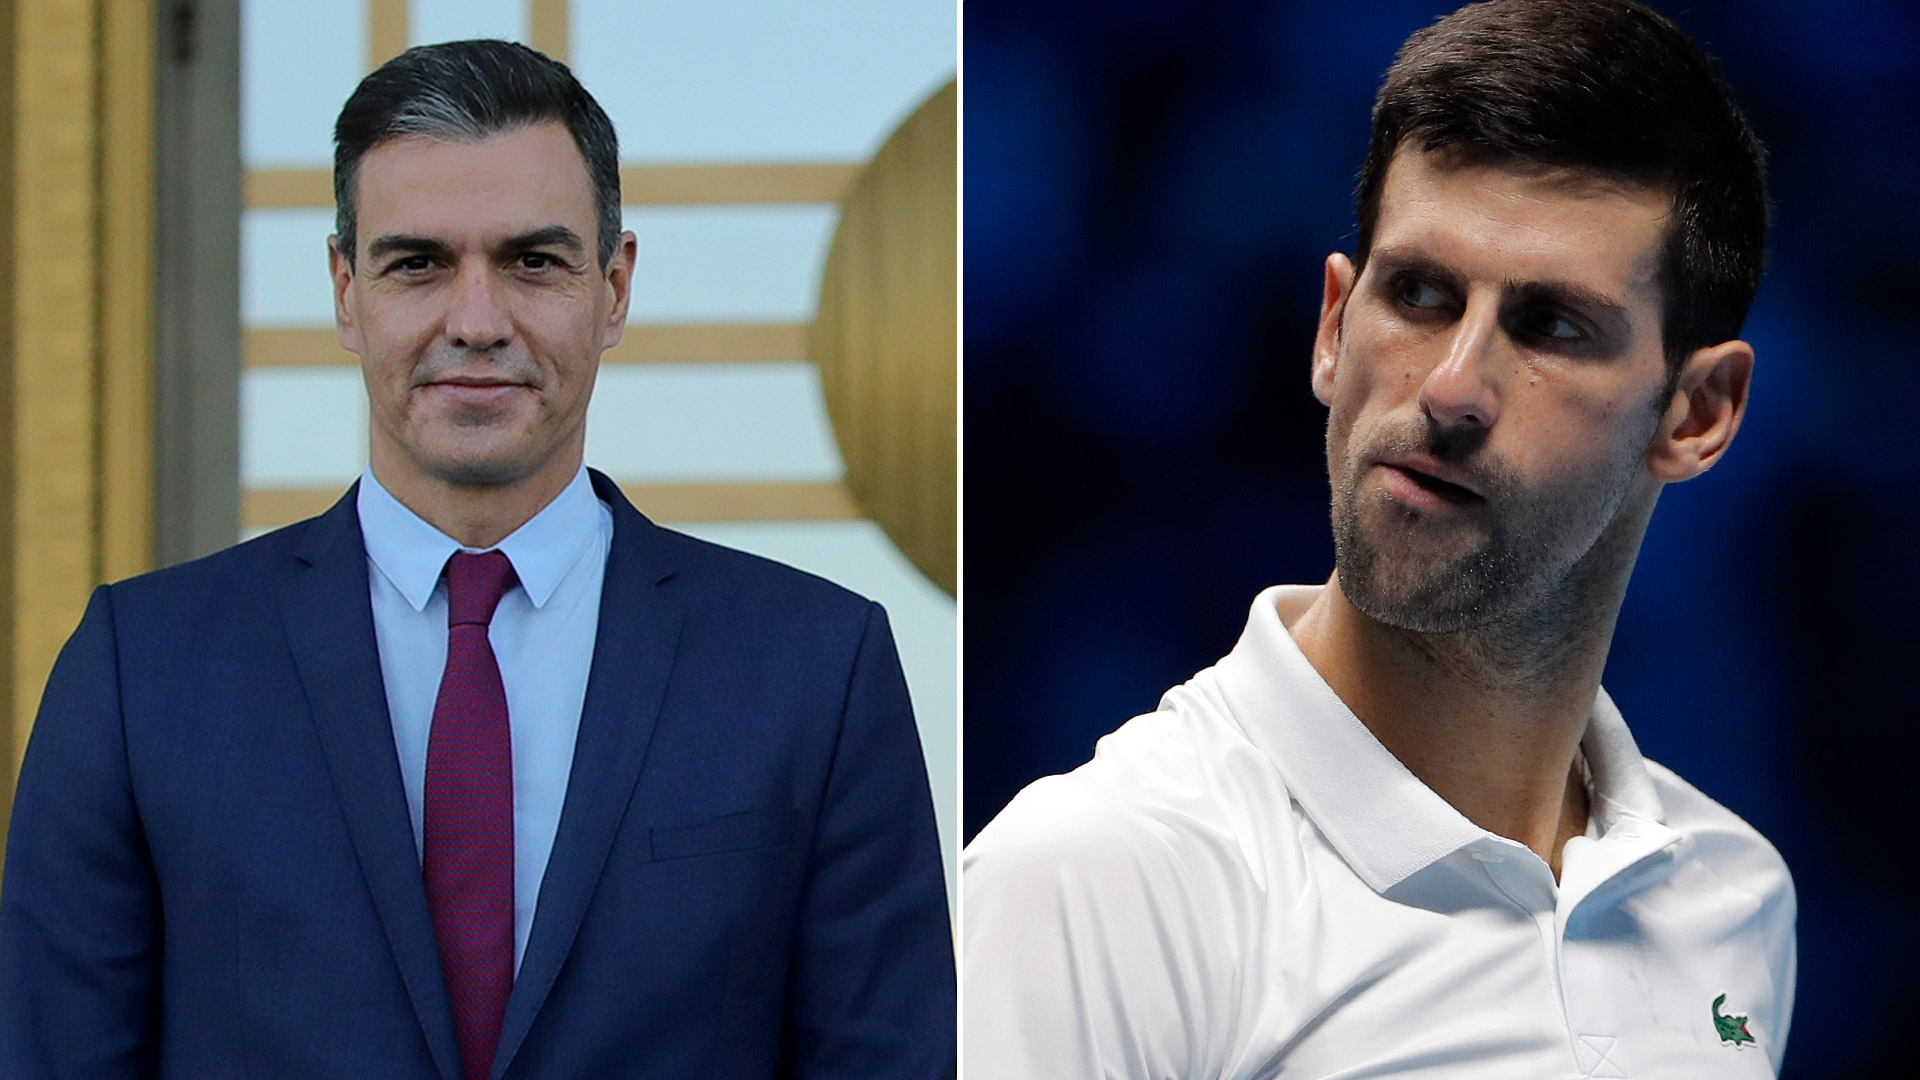 El presidente español, Pedro Sánchez, se refirió a la situación del tenista serbio Novak Djokovic